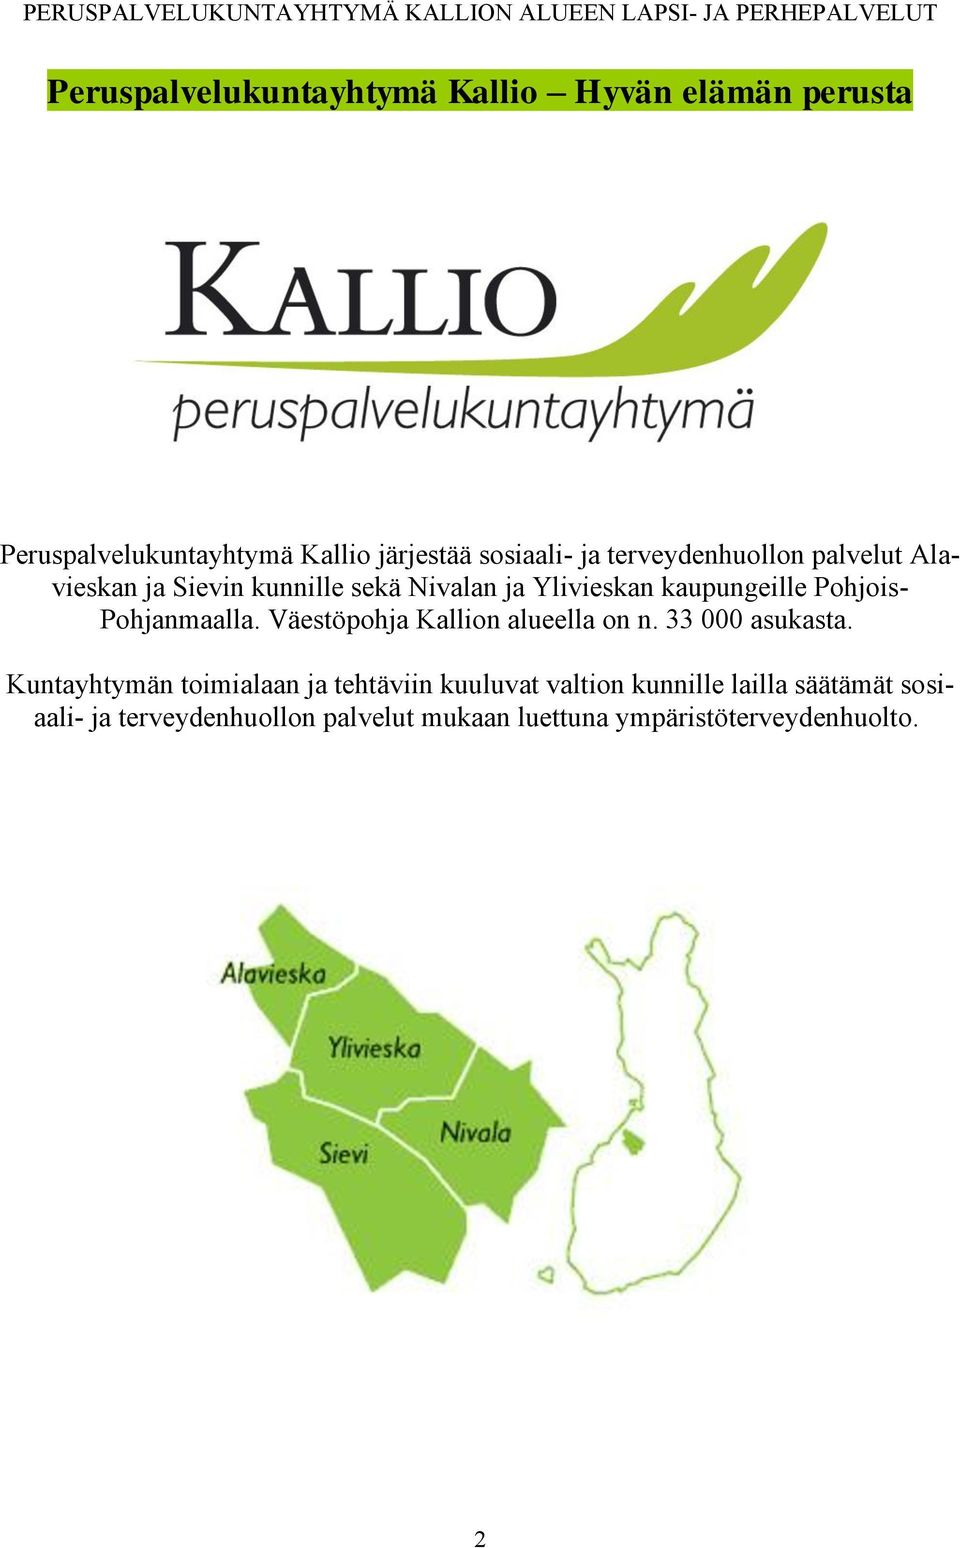 Pohjanmaalla. Väestöpohja Kallion alueella on n. 33 000 asukasta.